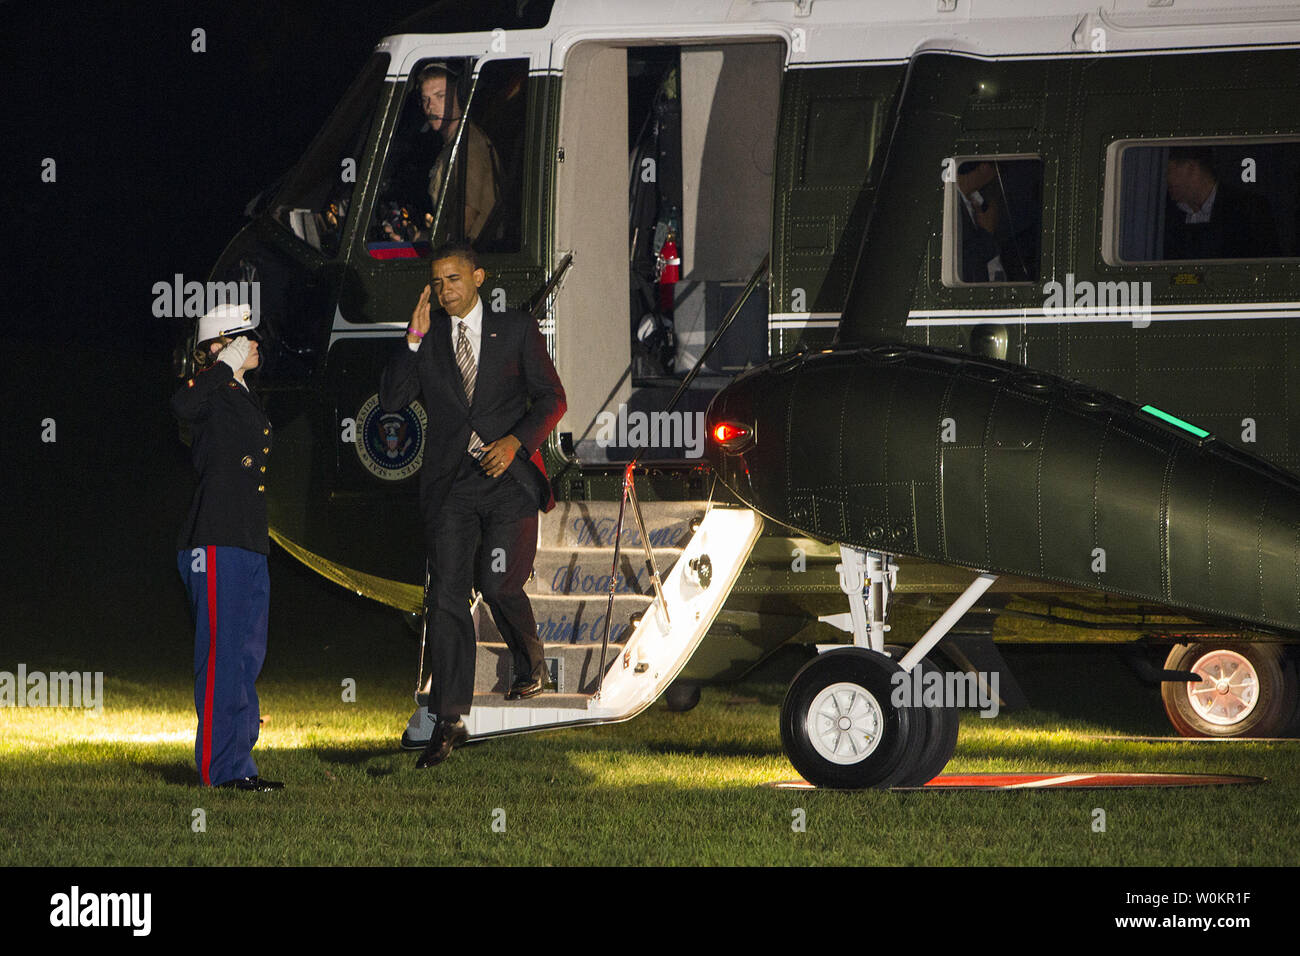 25 Ottobre 2012 - Washington, D.C. - Il Presidente Barack Obama passeggiate attraverso il South Lawn della casa bianca dopo il ritorno a casa da una serie di eventi della campagna in tutto il paese. Photo credit: Kristoffer Tripplaar/ Sipa premere Foto Stock